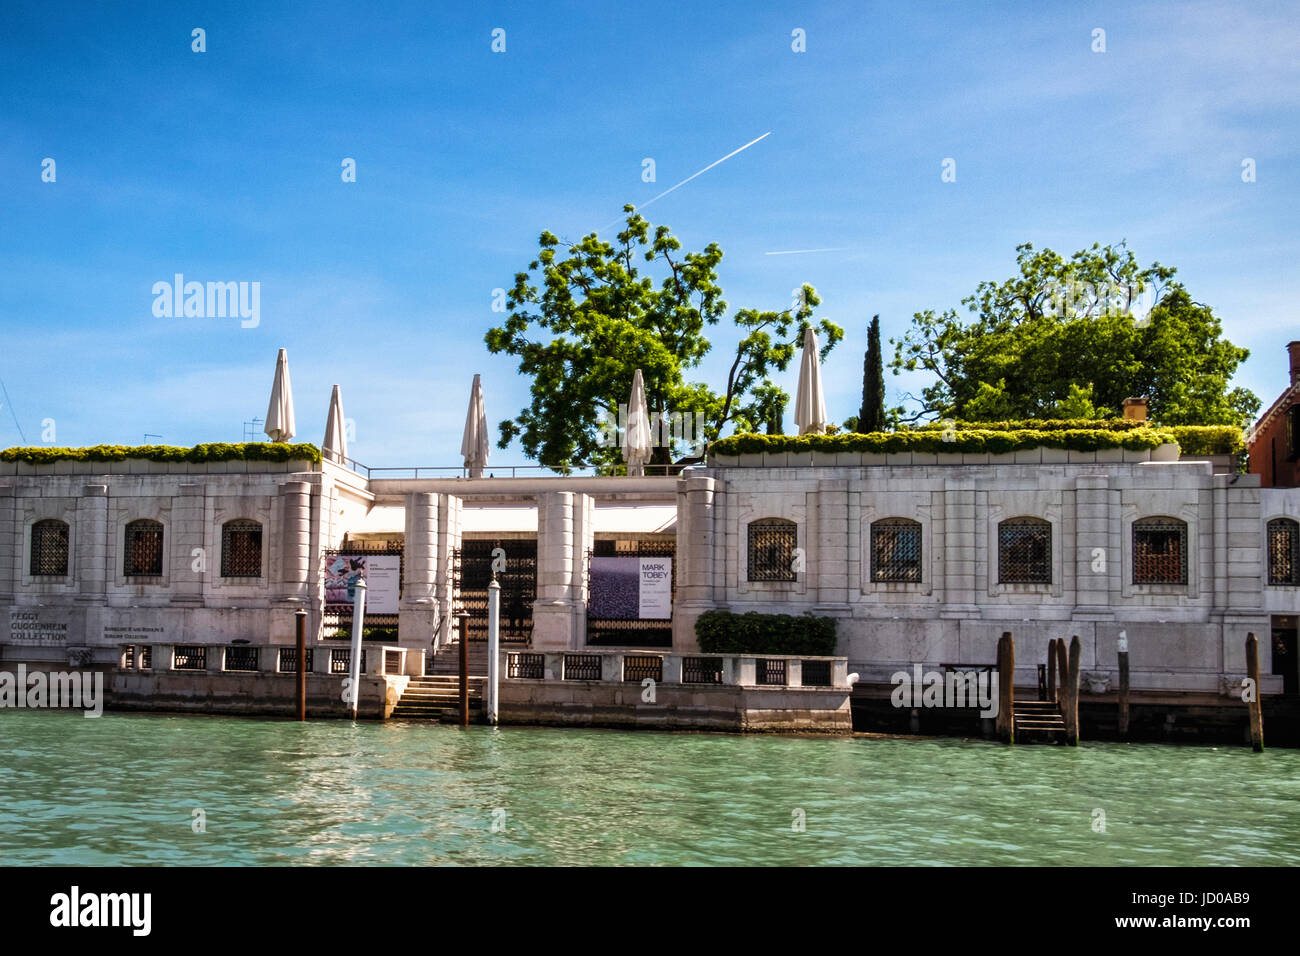 Venezia, Italia. Palazzo Venier dei Leoni,xviii waterside palazzo sul Canal Grande Palazzo che ospita la Fondazione Peggy Guggenheim Collection Foto Stock